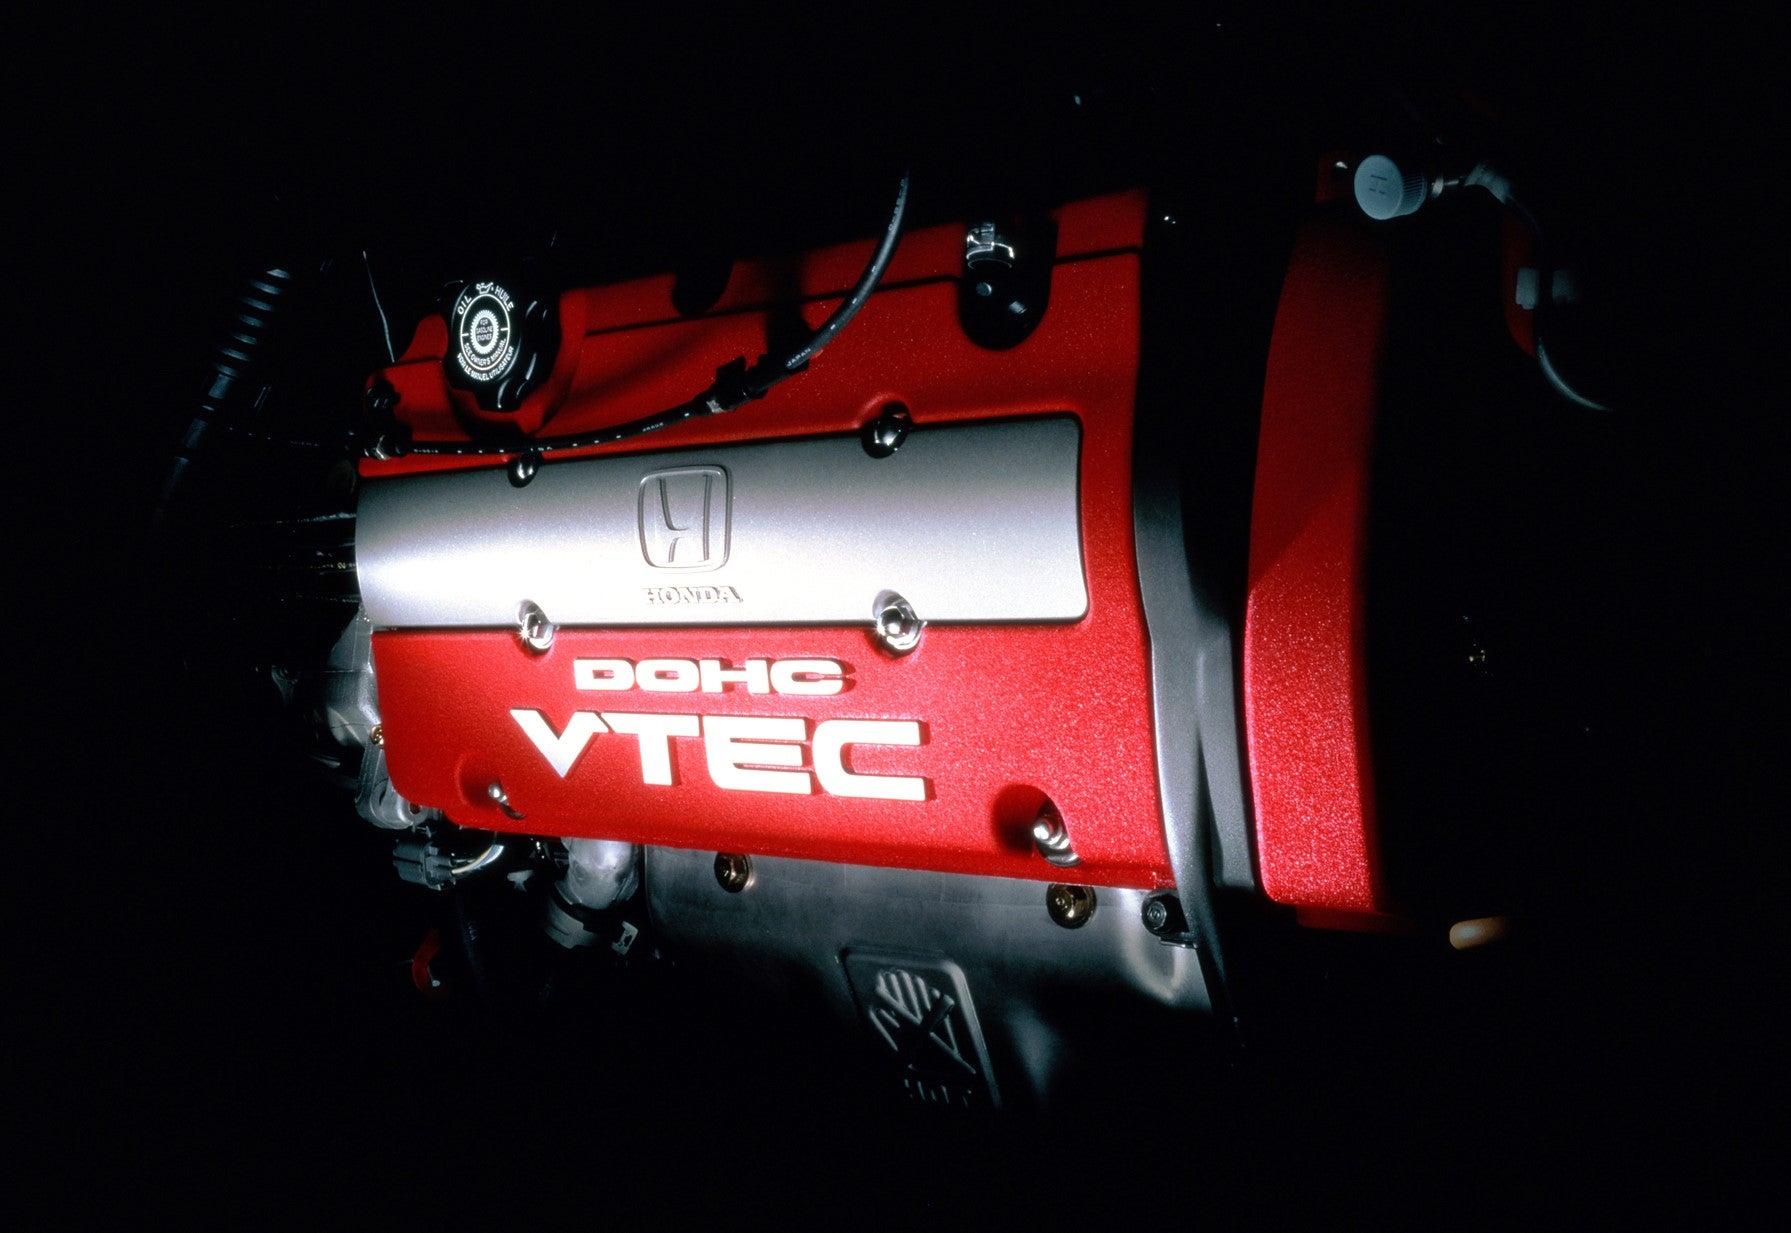 自然吸気エンジンでリッター当たり100ps、最高出力220psを発揮する2.2L DOHC VTECエンジン。高回転域までパワフルなエンジンは専用ギアレシオの5MTとあいまって、優れた加速を実現